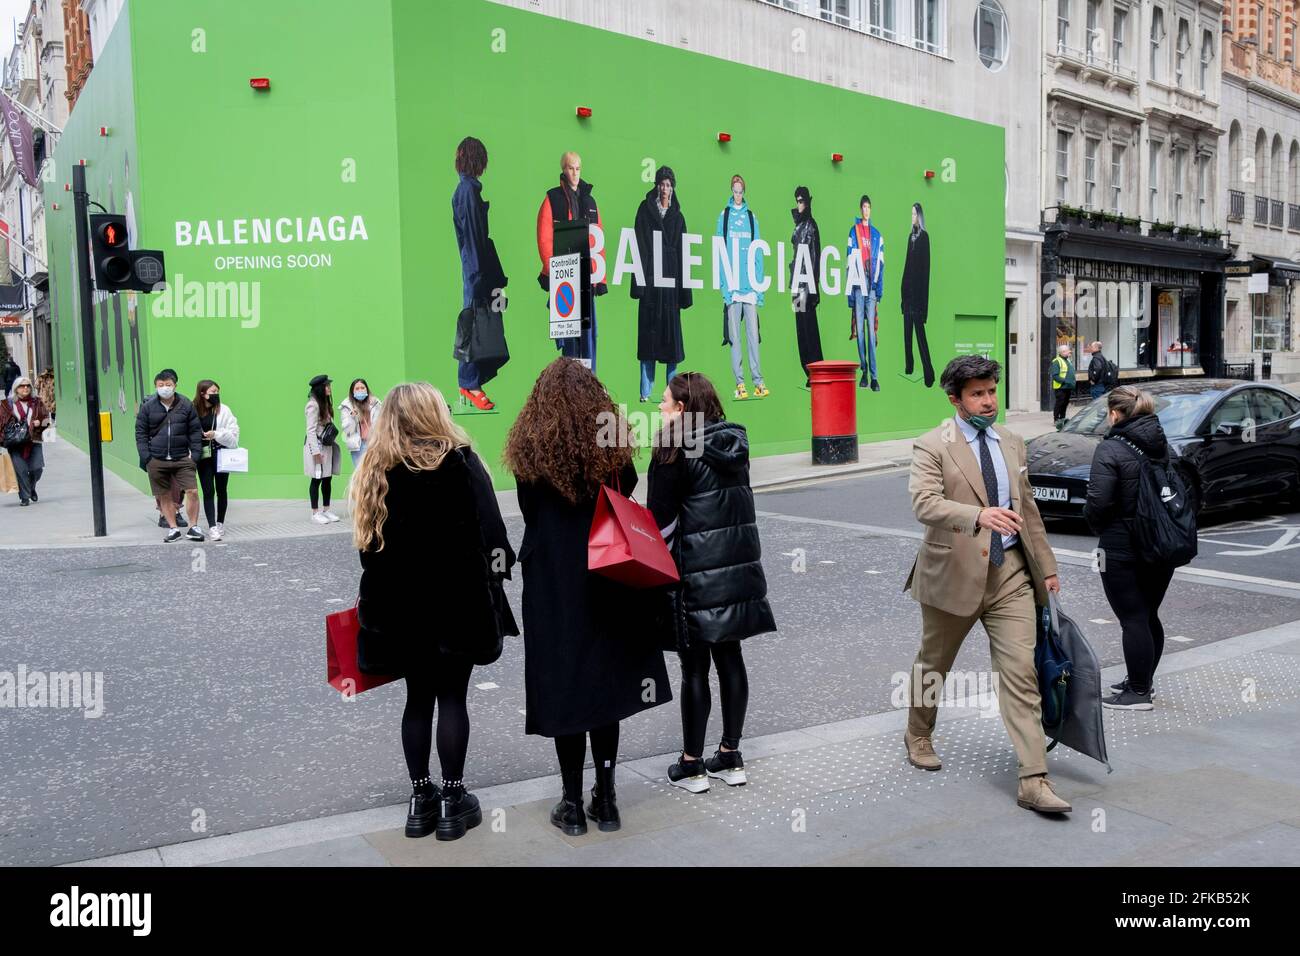 Les acheteurs traversent la route vers la palissade temporaire pour  Balenciaga, un espace de vente au détail qui ouvrira bientôt sur Bond  Street, le 27 avril 2021, à Londres, en Angleterre. Balenciaga